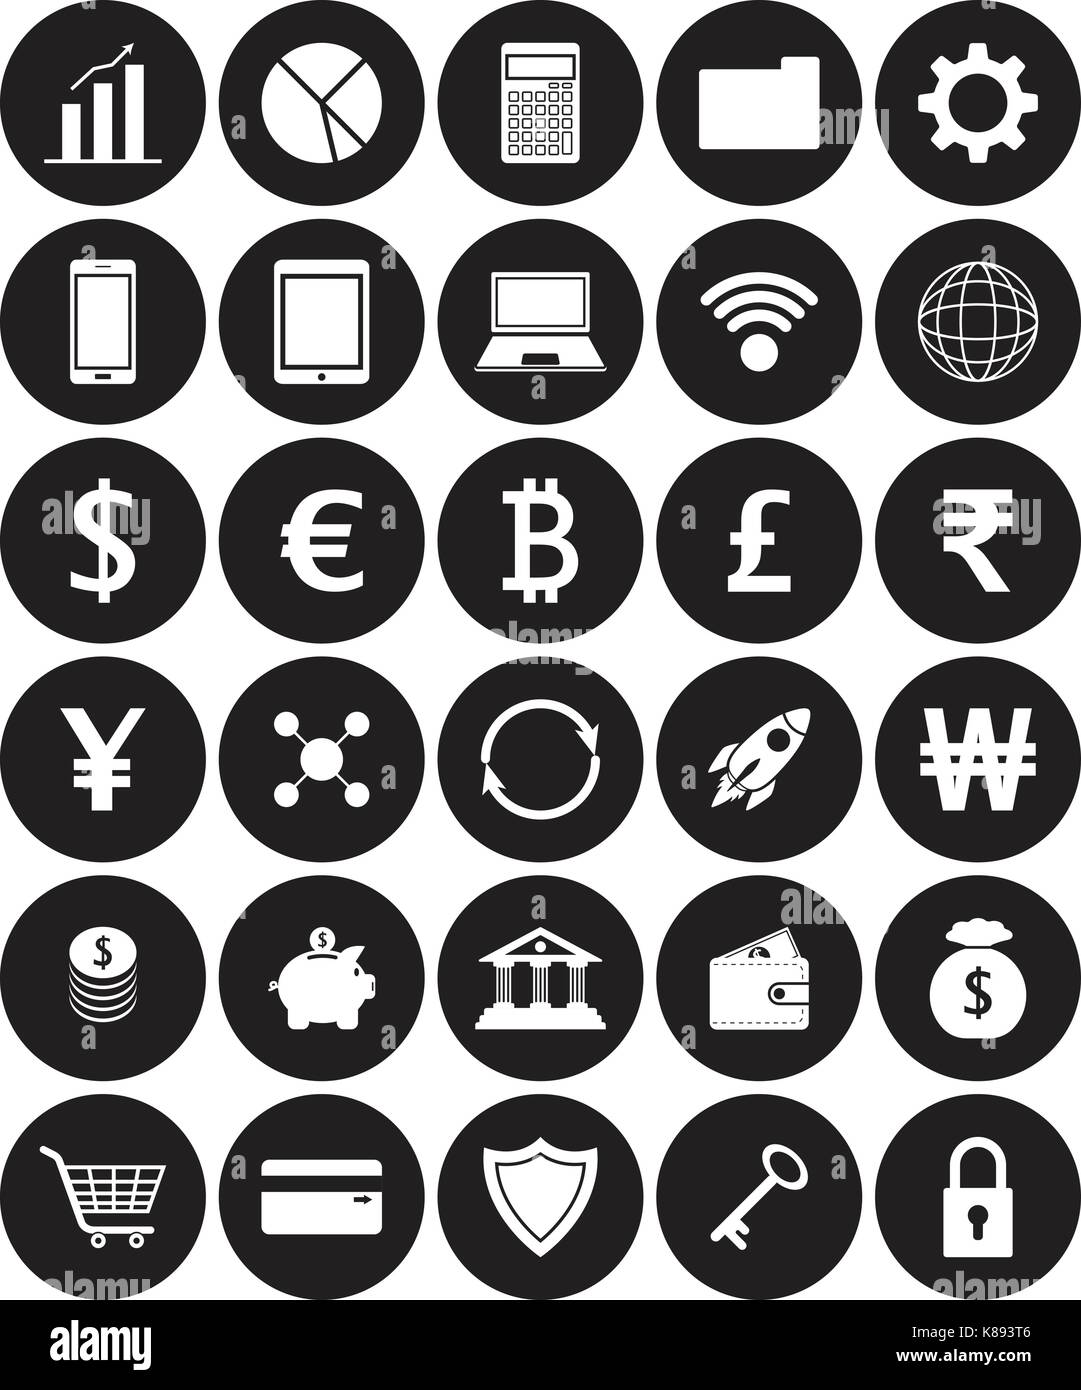 Vektor einfach zu bedienende 30 weißen flachen Symbole mit mehreren Währungen auf schwarze Kreise, die in der Technologie, Übertragung, Banking, und speichern Stock Vektor